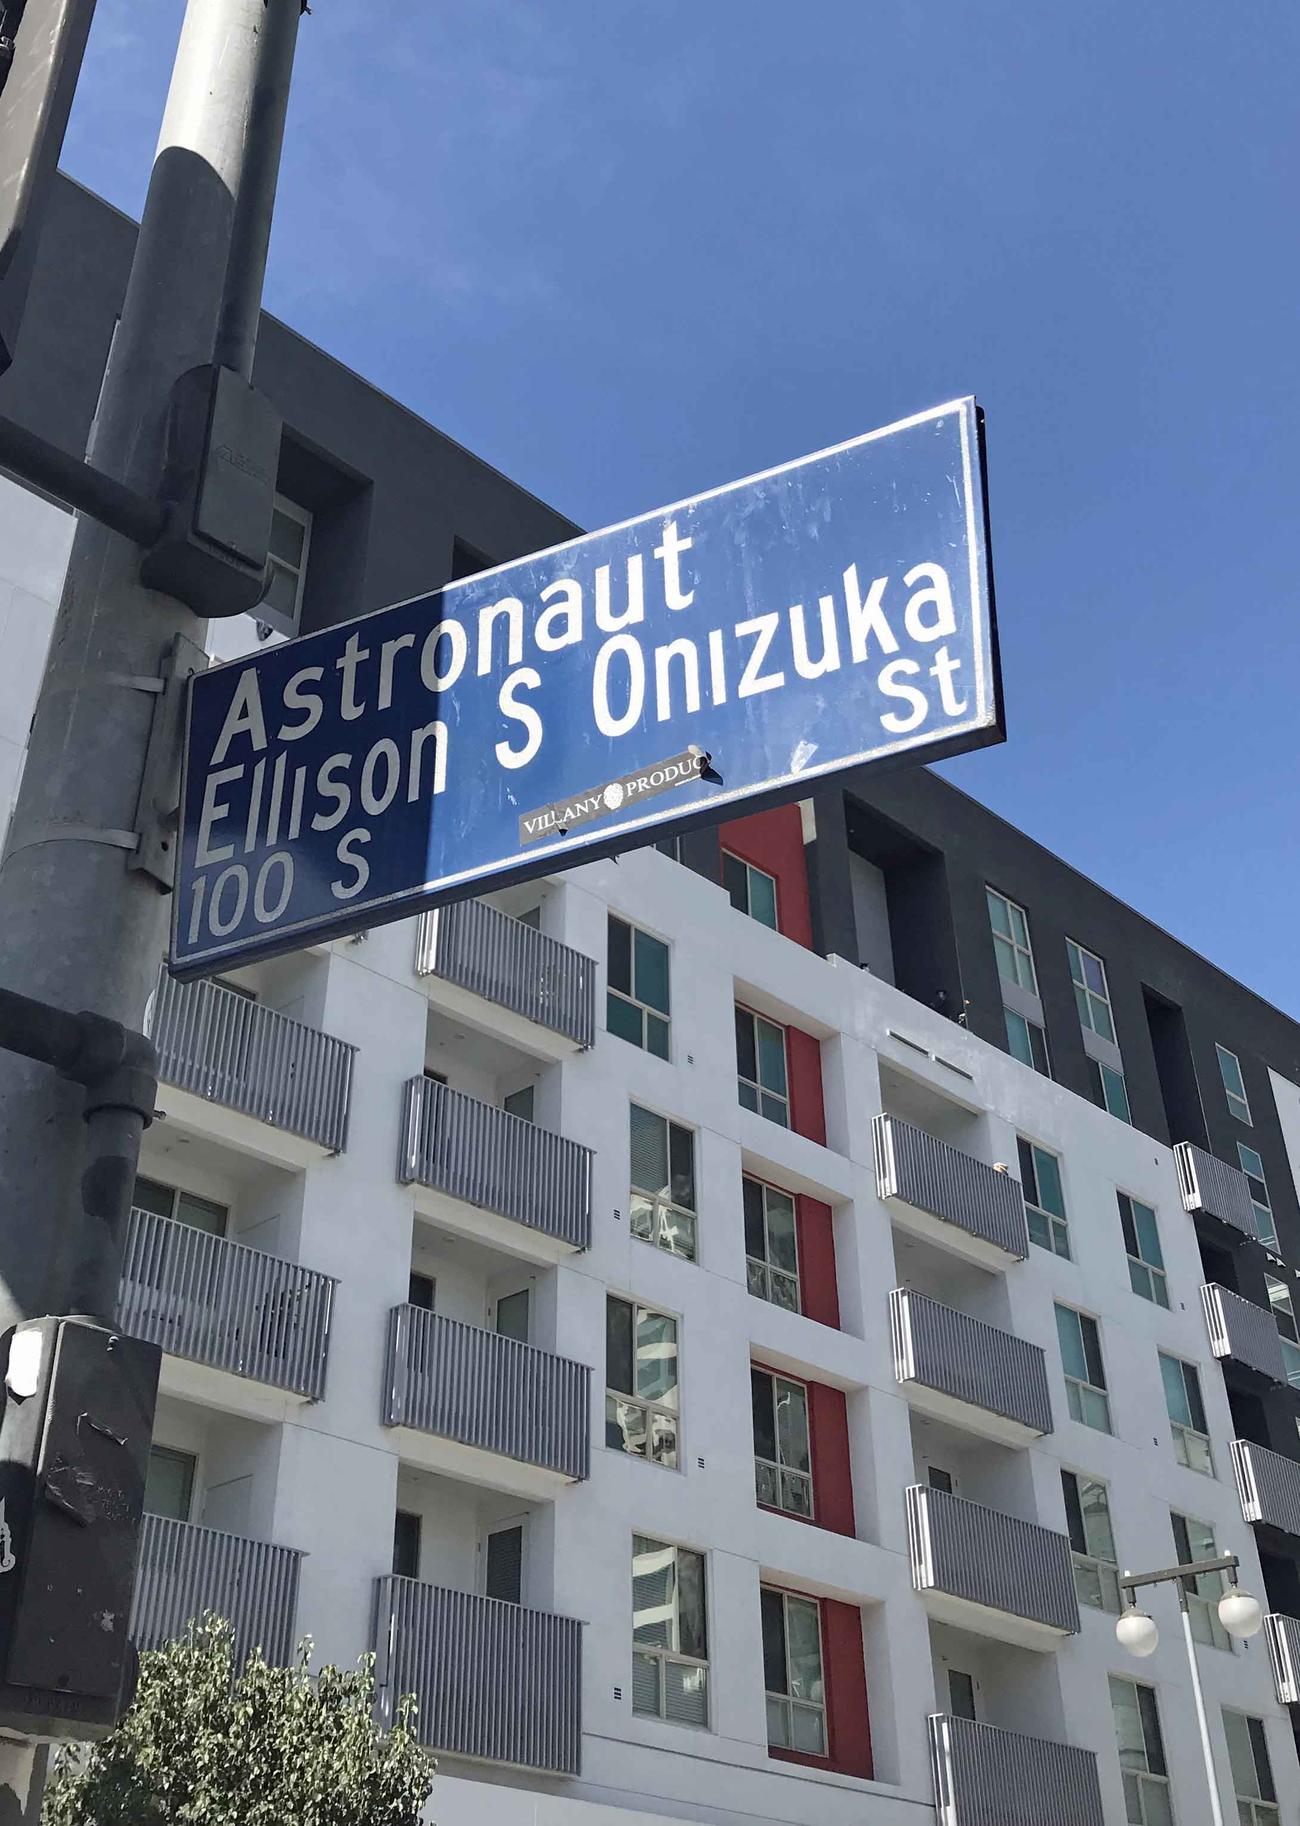 リトルトーキョーにある宇宙飛行士エリソン・オニヅカ・ストリートと名付けられた道路の標識